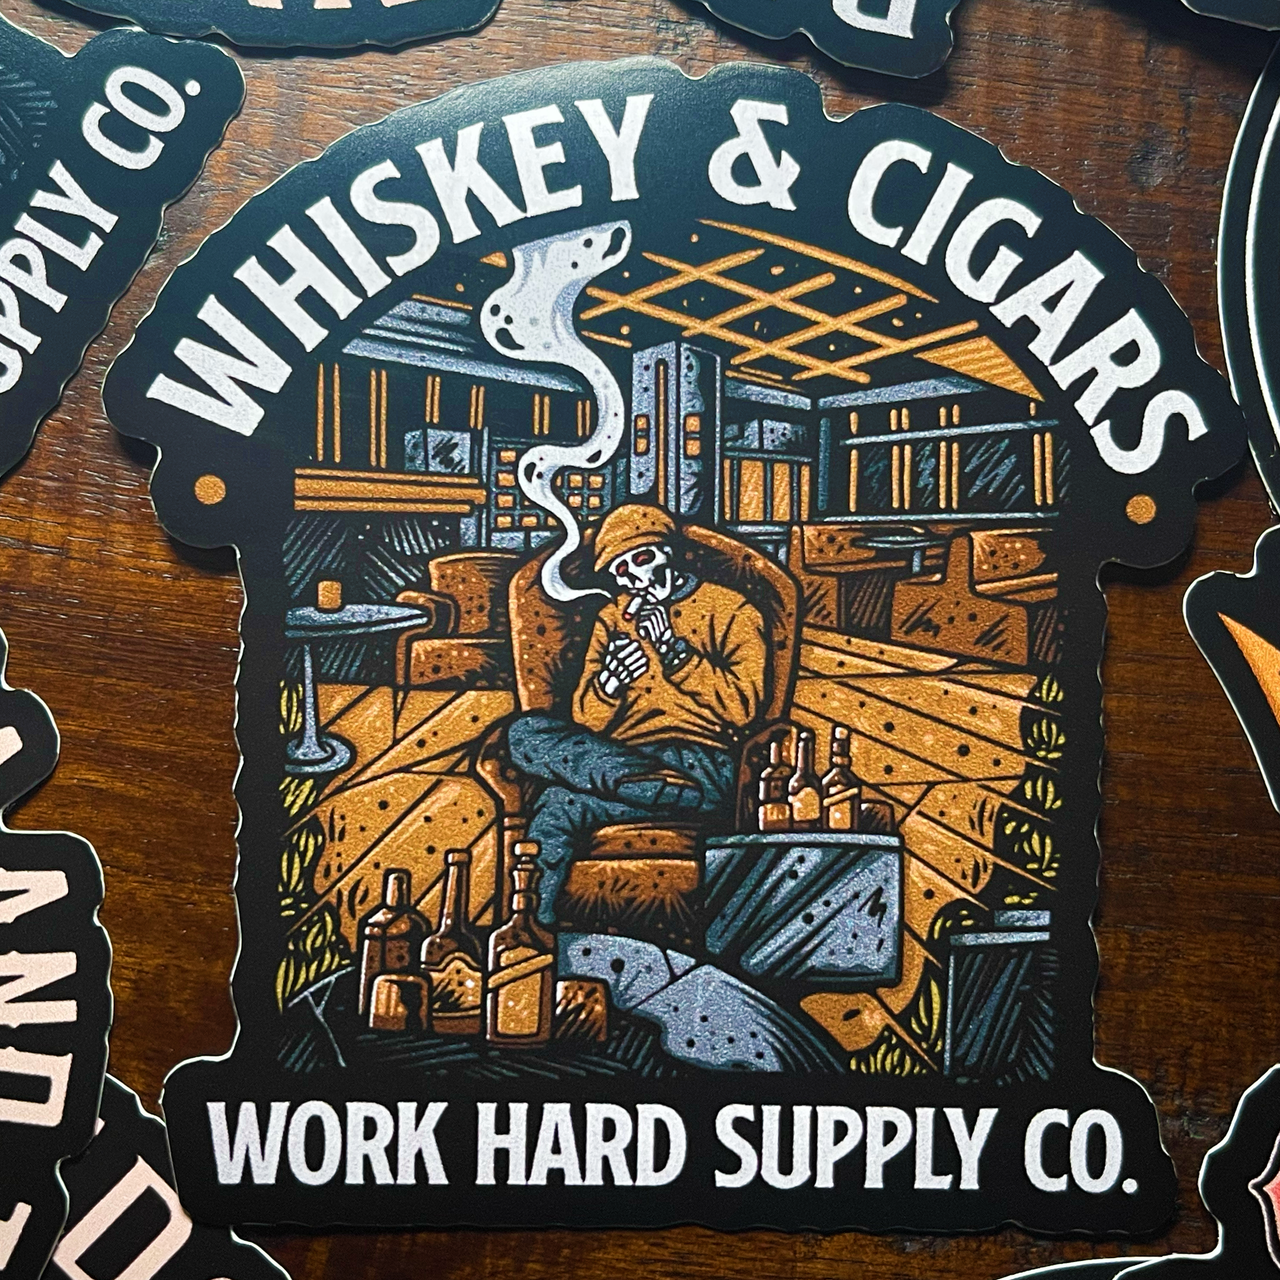 Whiskey & Cigars Sticker